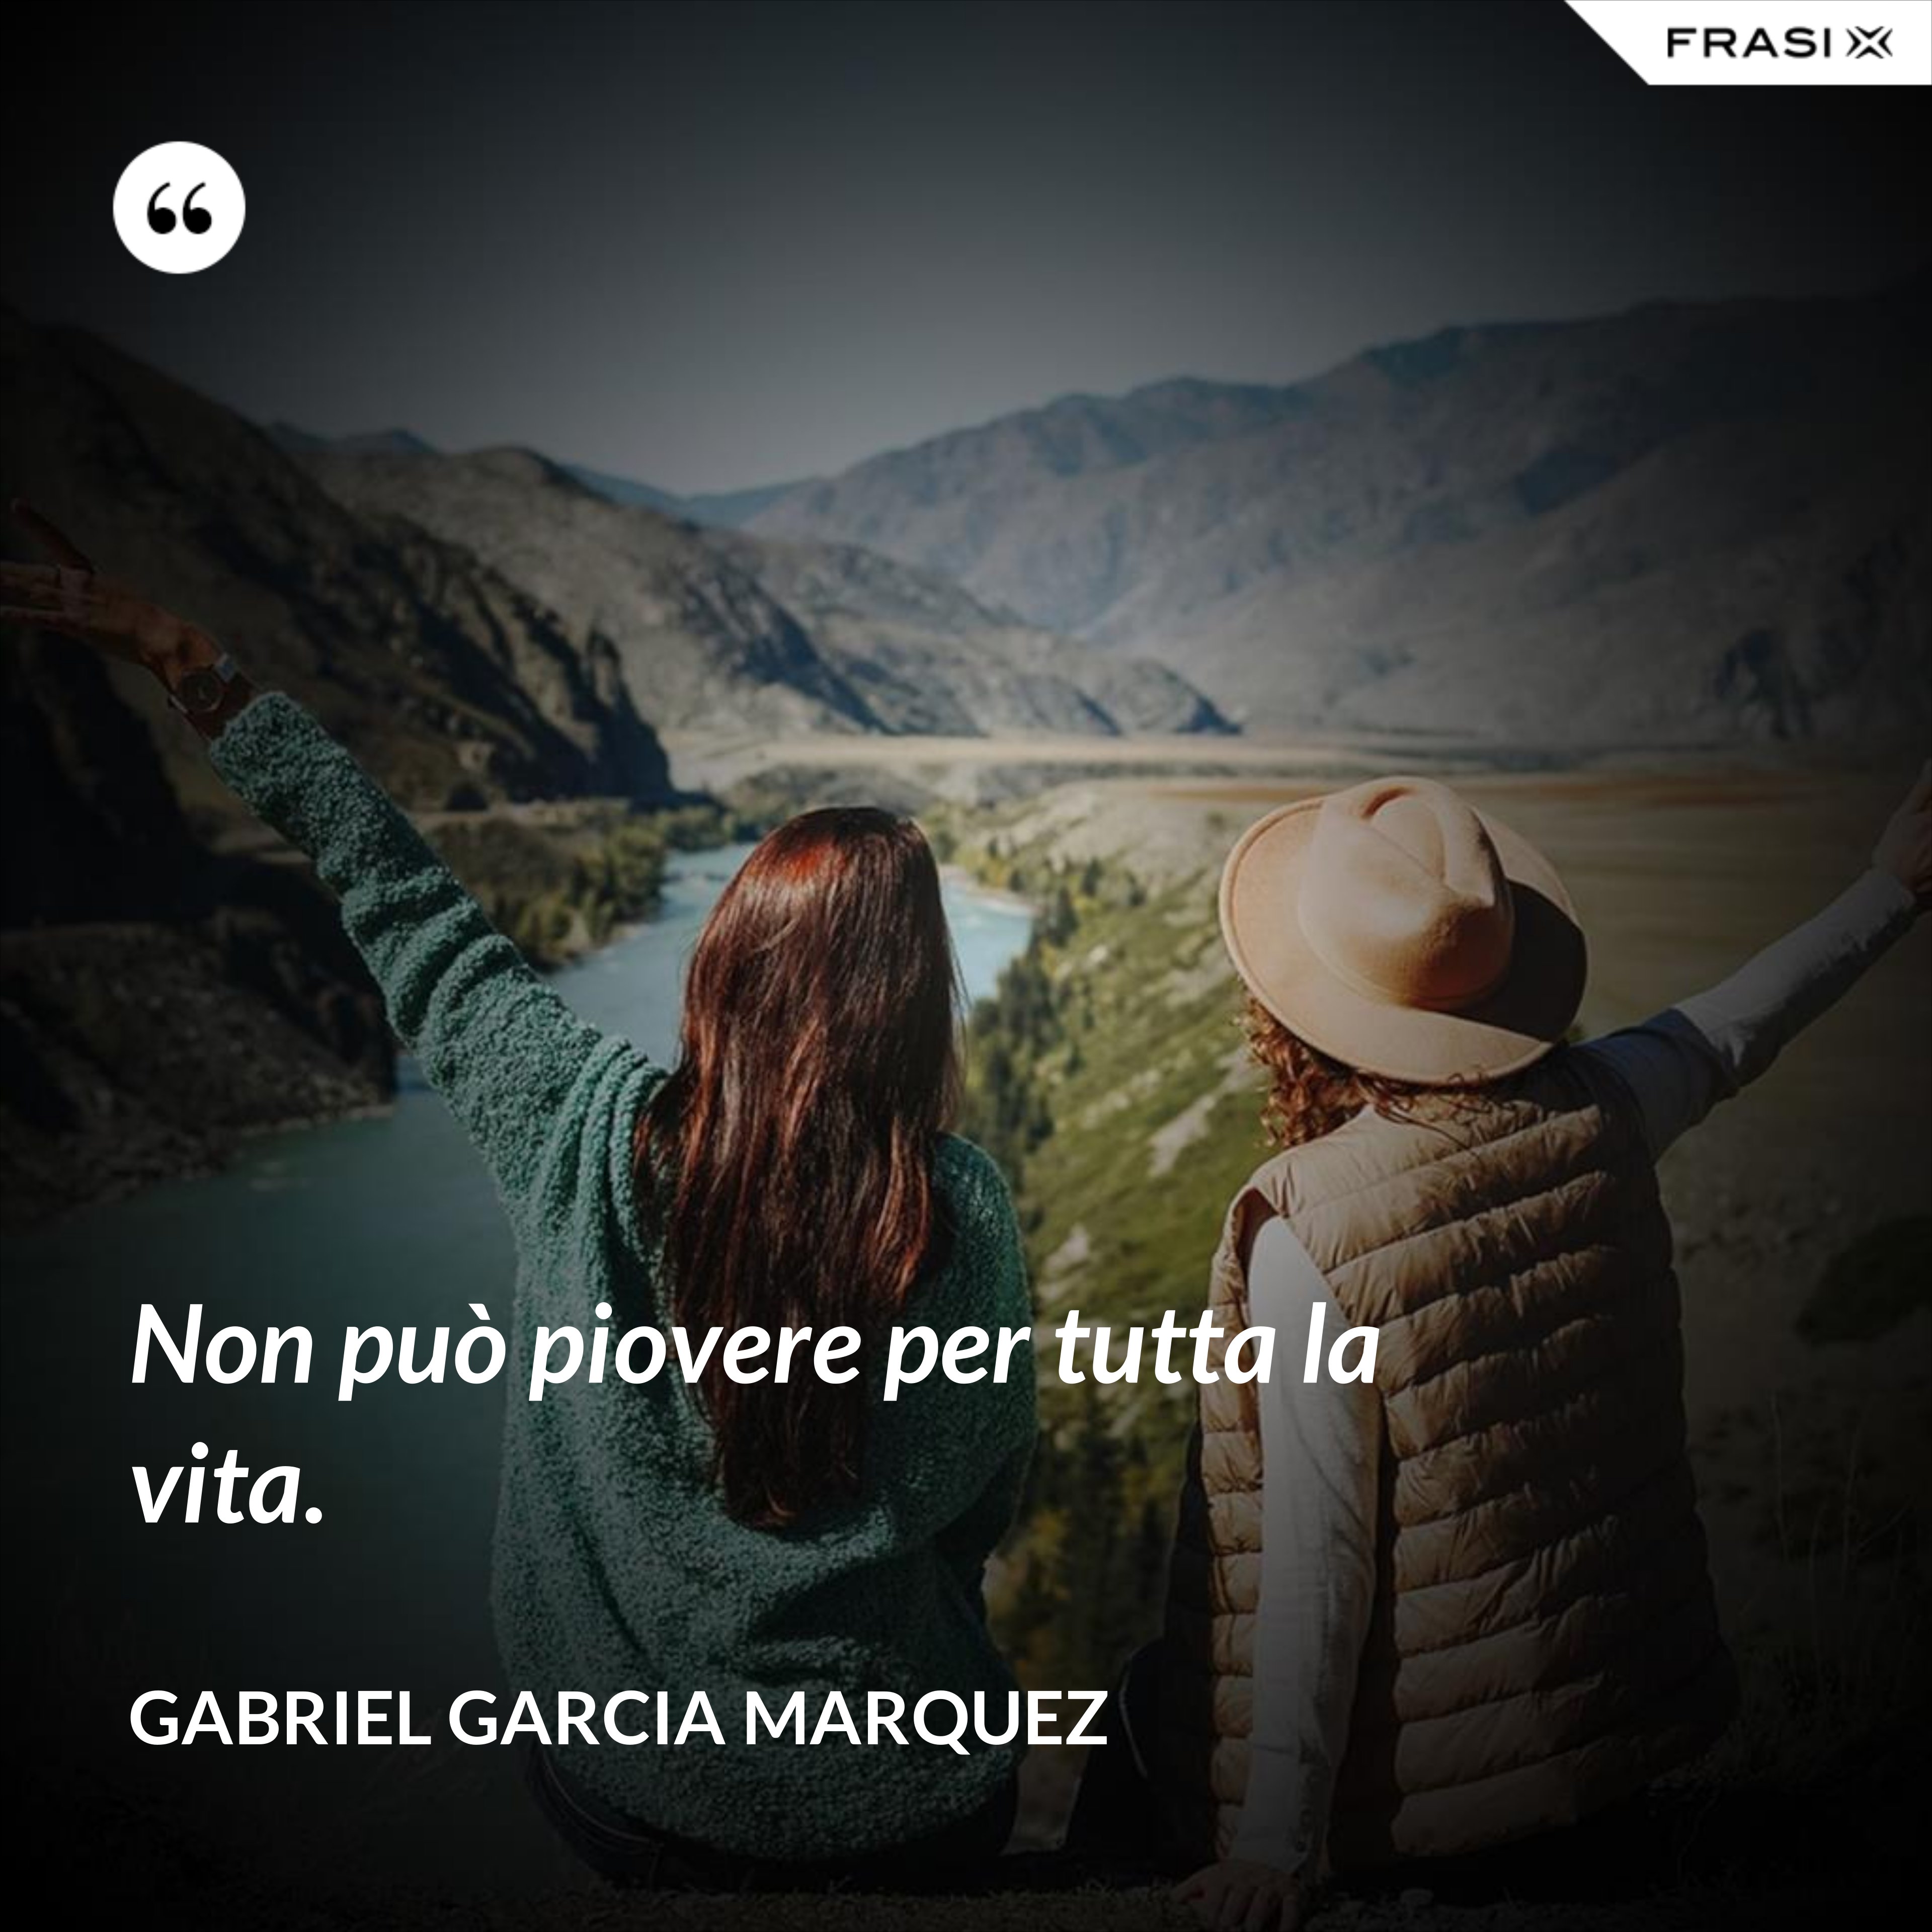 Non può piovere per tutta la vita. - Gabriel Garcia Marquez